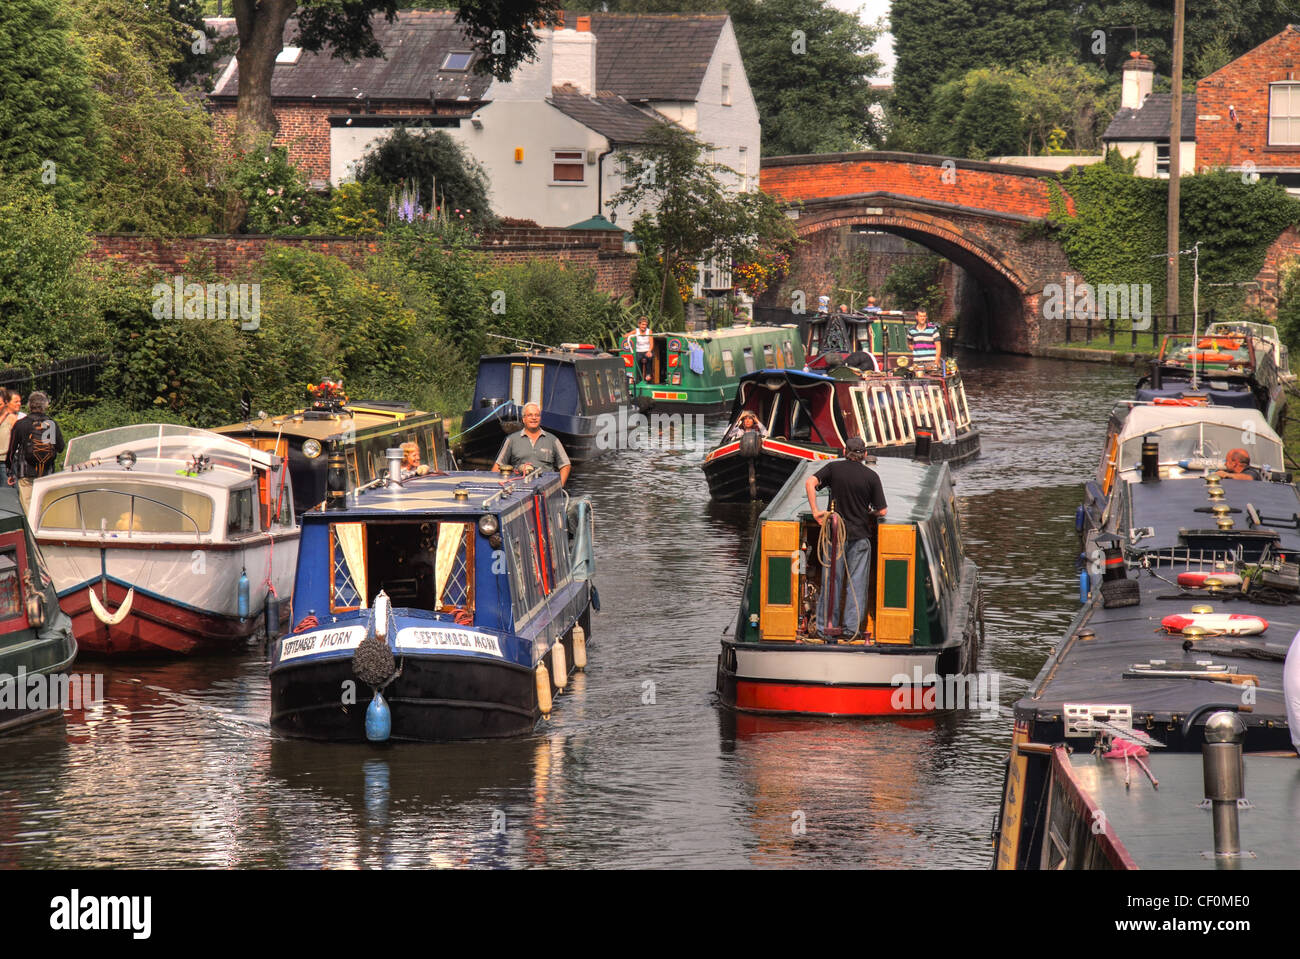 Bateaux du Canal anglais Rush hour sur le Canal de Bridgewater, Lymm, Cheshire, England, UK Banque D'Images